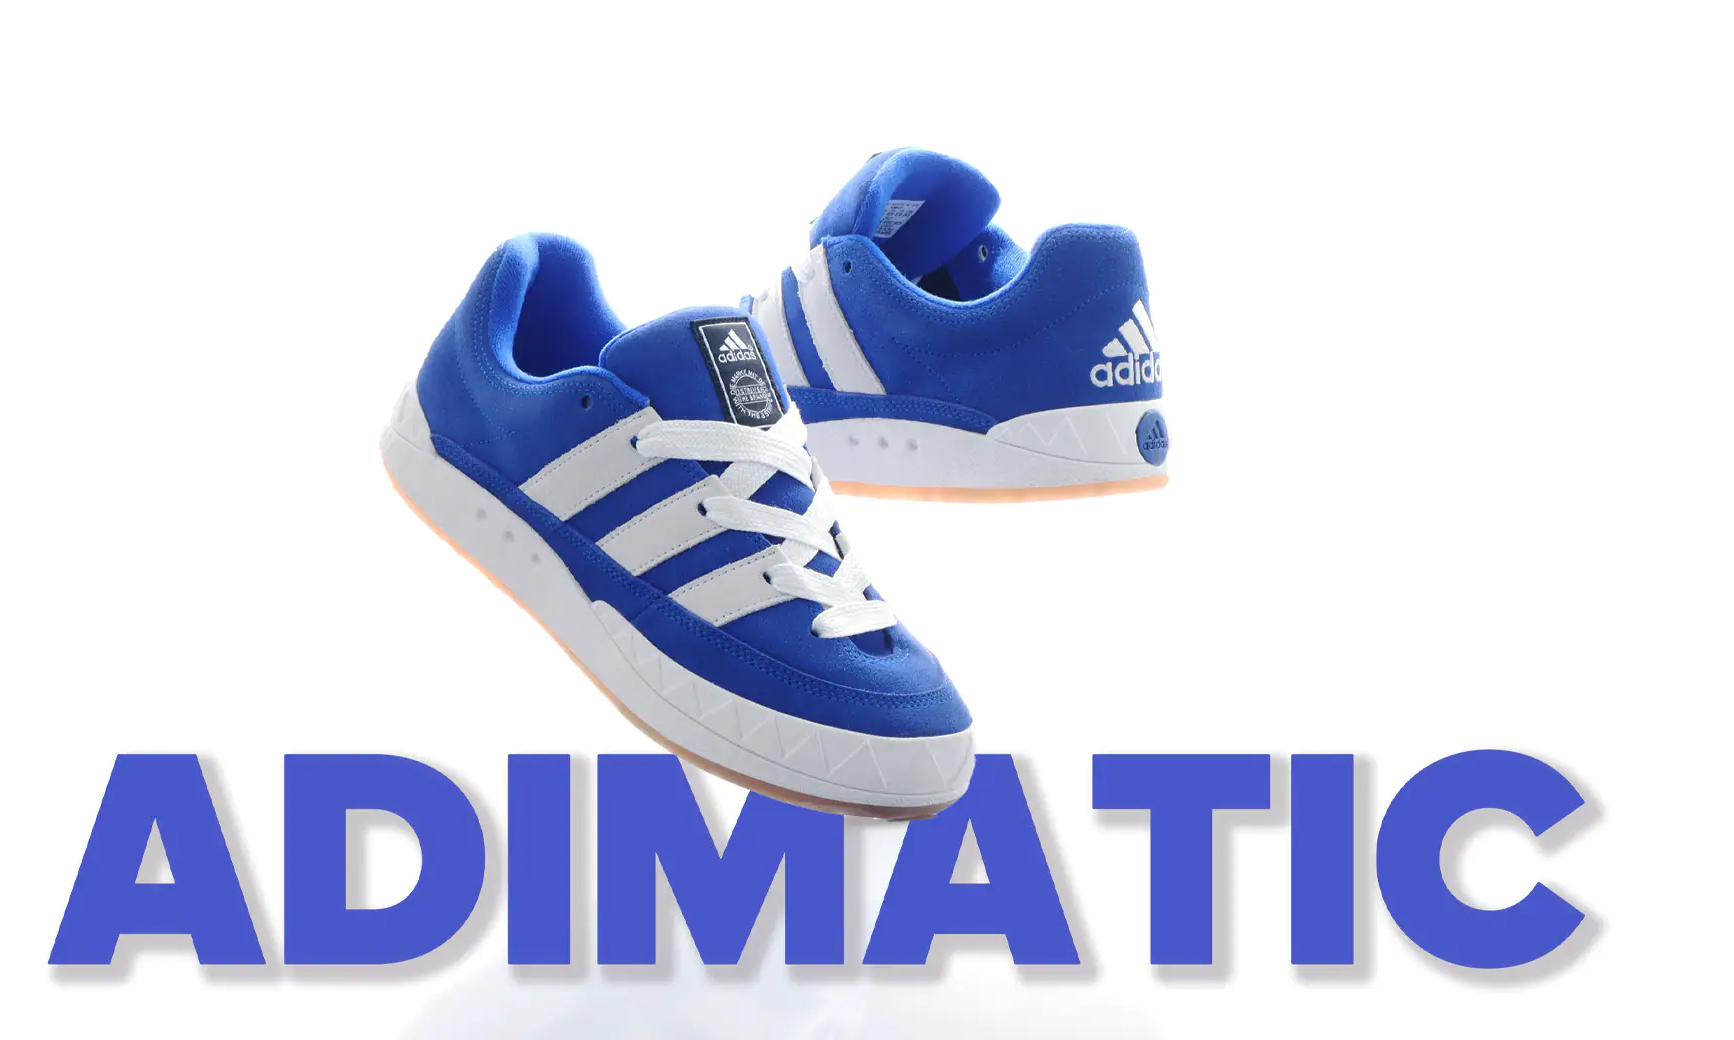 atmos 将发售「adidas Originals ADIMATIC atmos Blue」鞋款